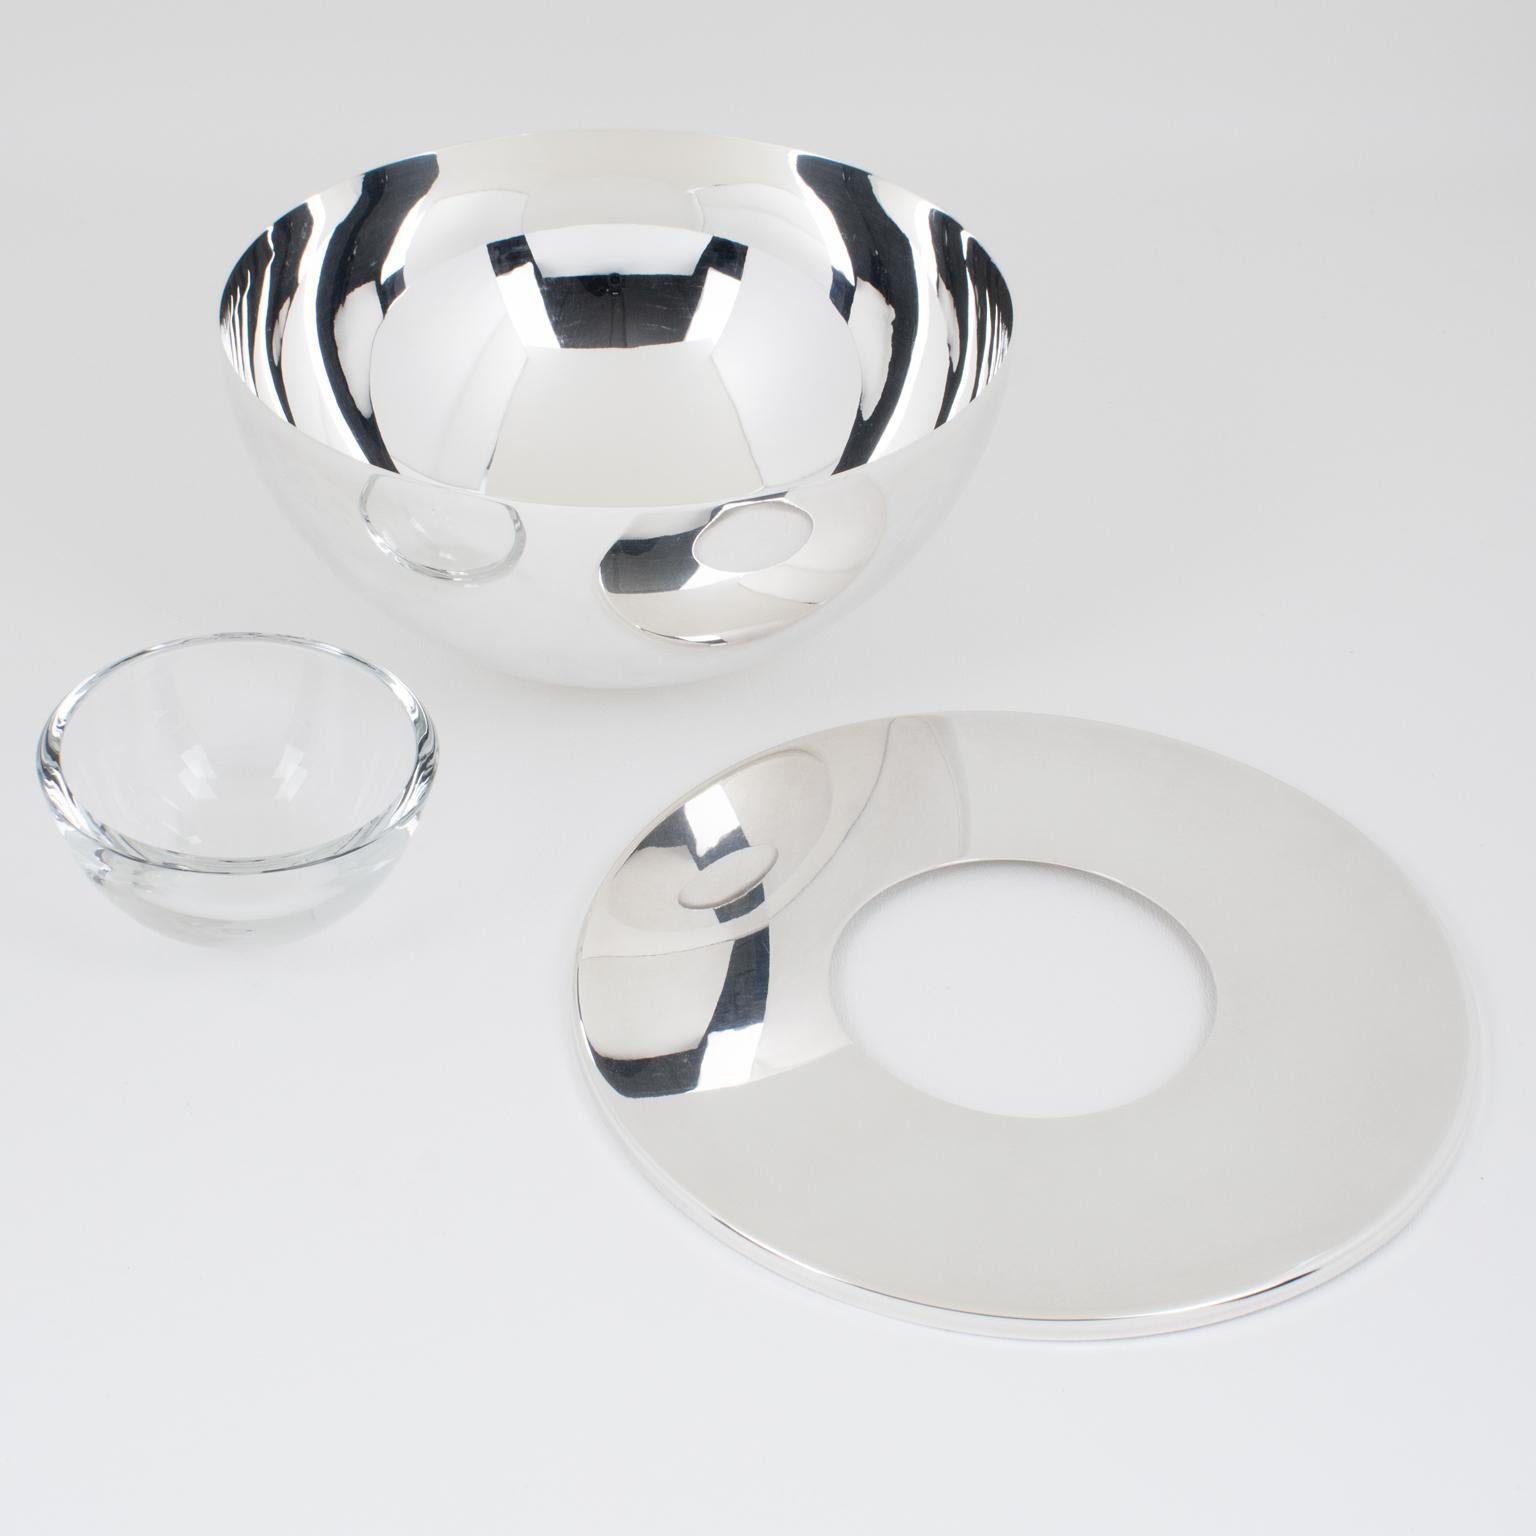 Métal Swid Powell for Calvin Klein Silver Plate and Crystal Caviar Bowl Dish Chiller (assiette réfrigérante en métal argenté et cristal) en vente